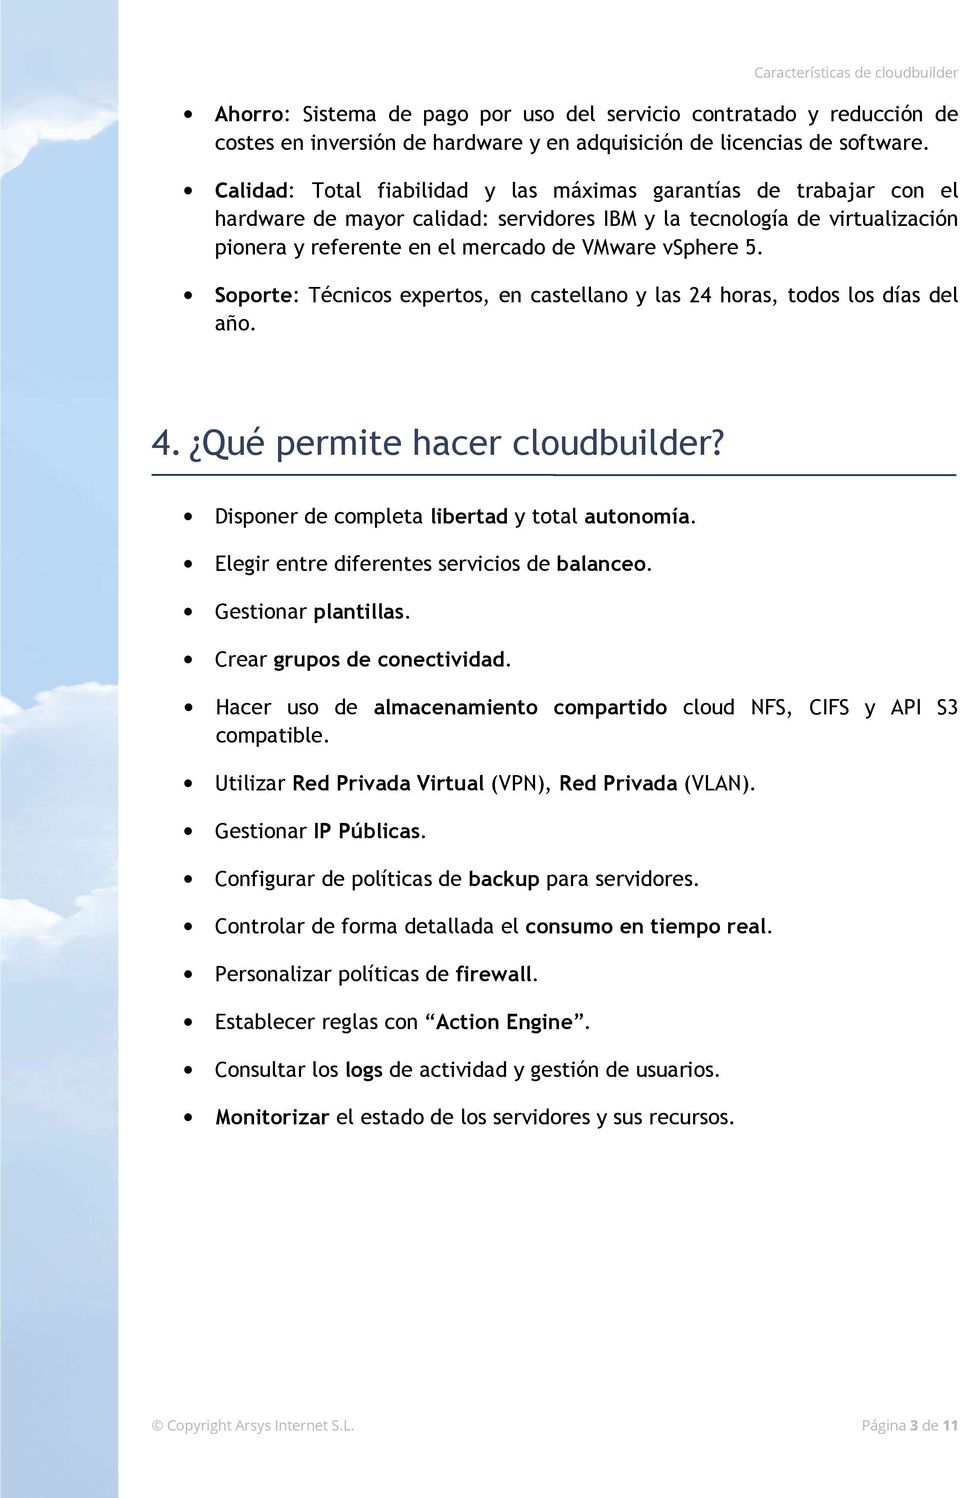 Soporte: Técnicos expertos, en castellano y las 24 horas, todos los días del año. 4. Qué permite hacer cloudbuilder? Disponer de completa libertad y total autonomía.